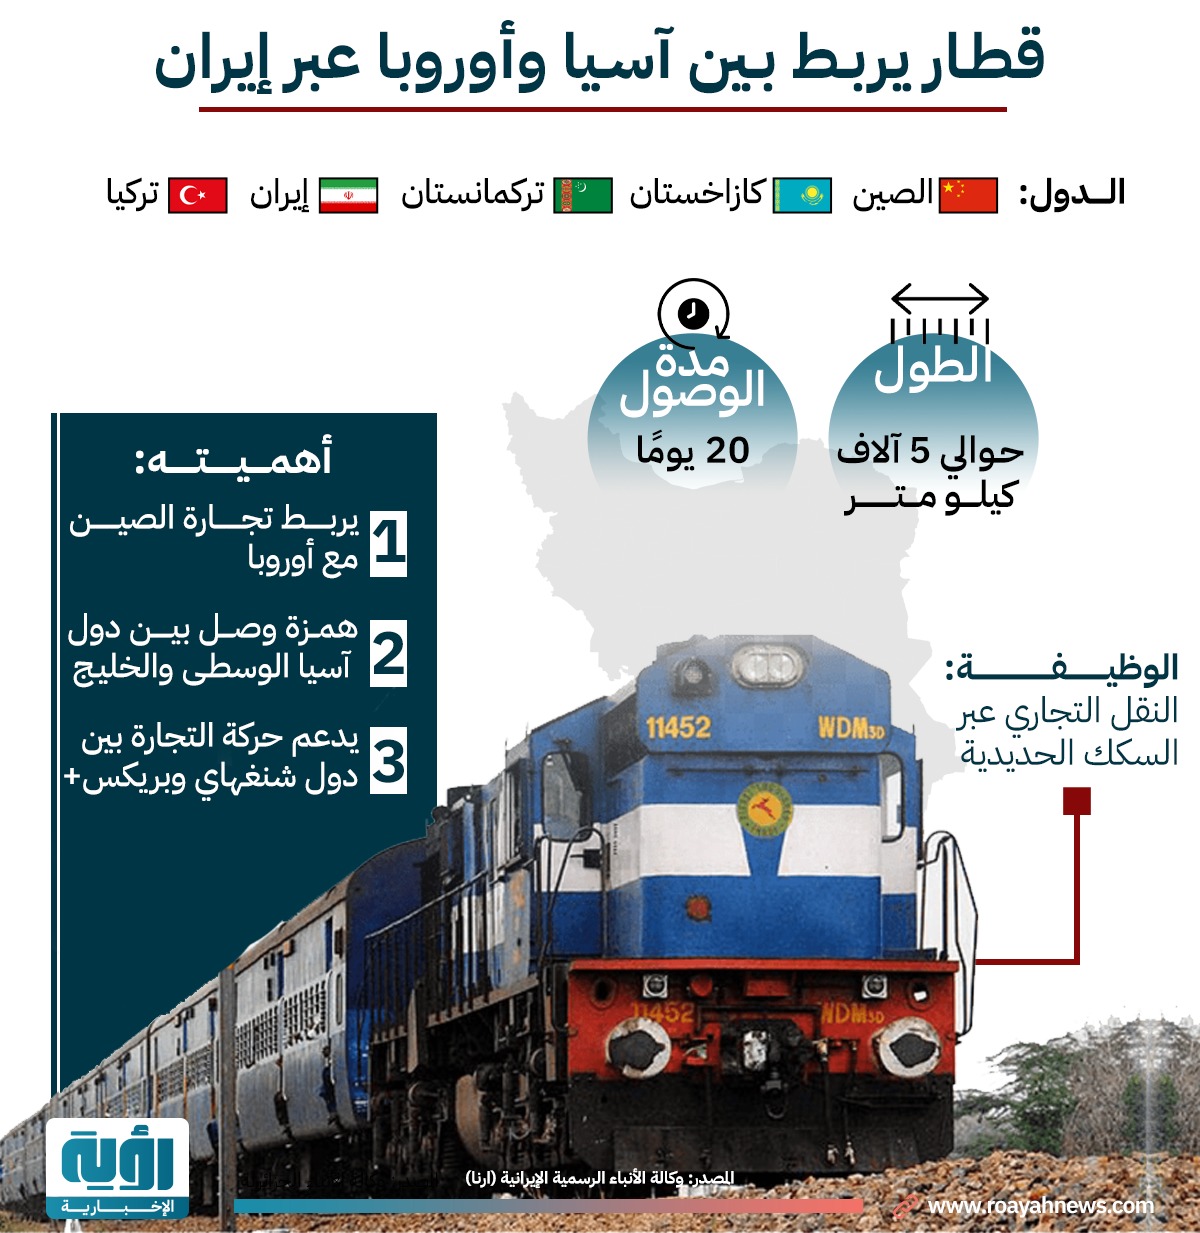 قطار يربط بين أسيا وأوروبا عبر إيران